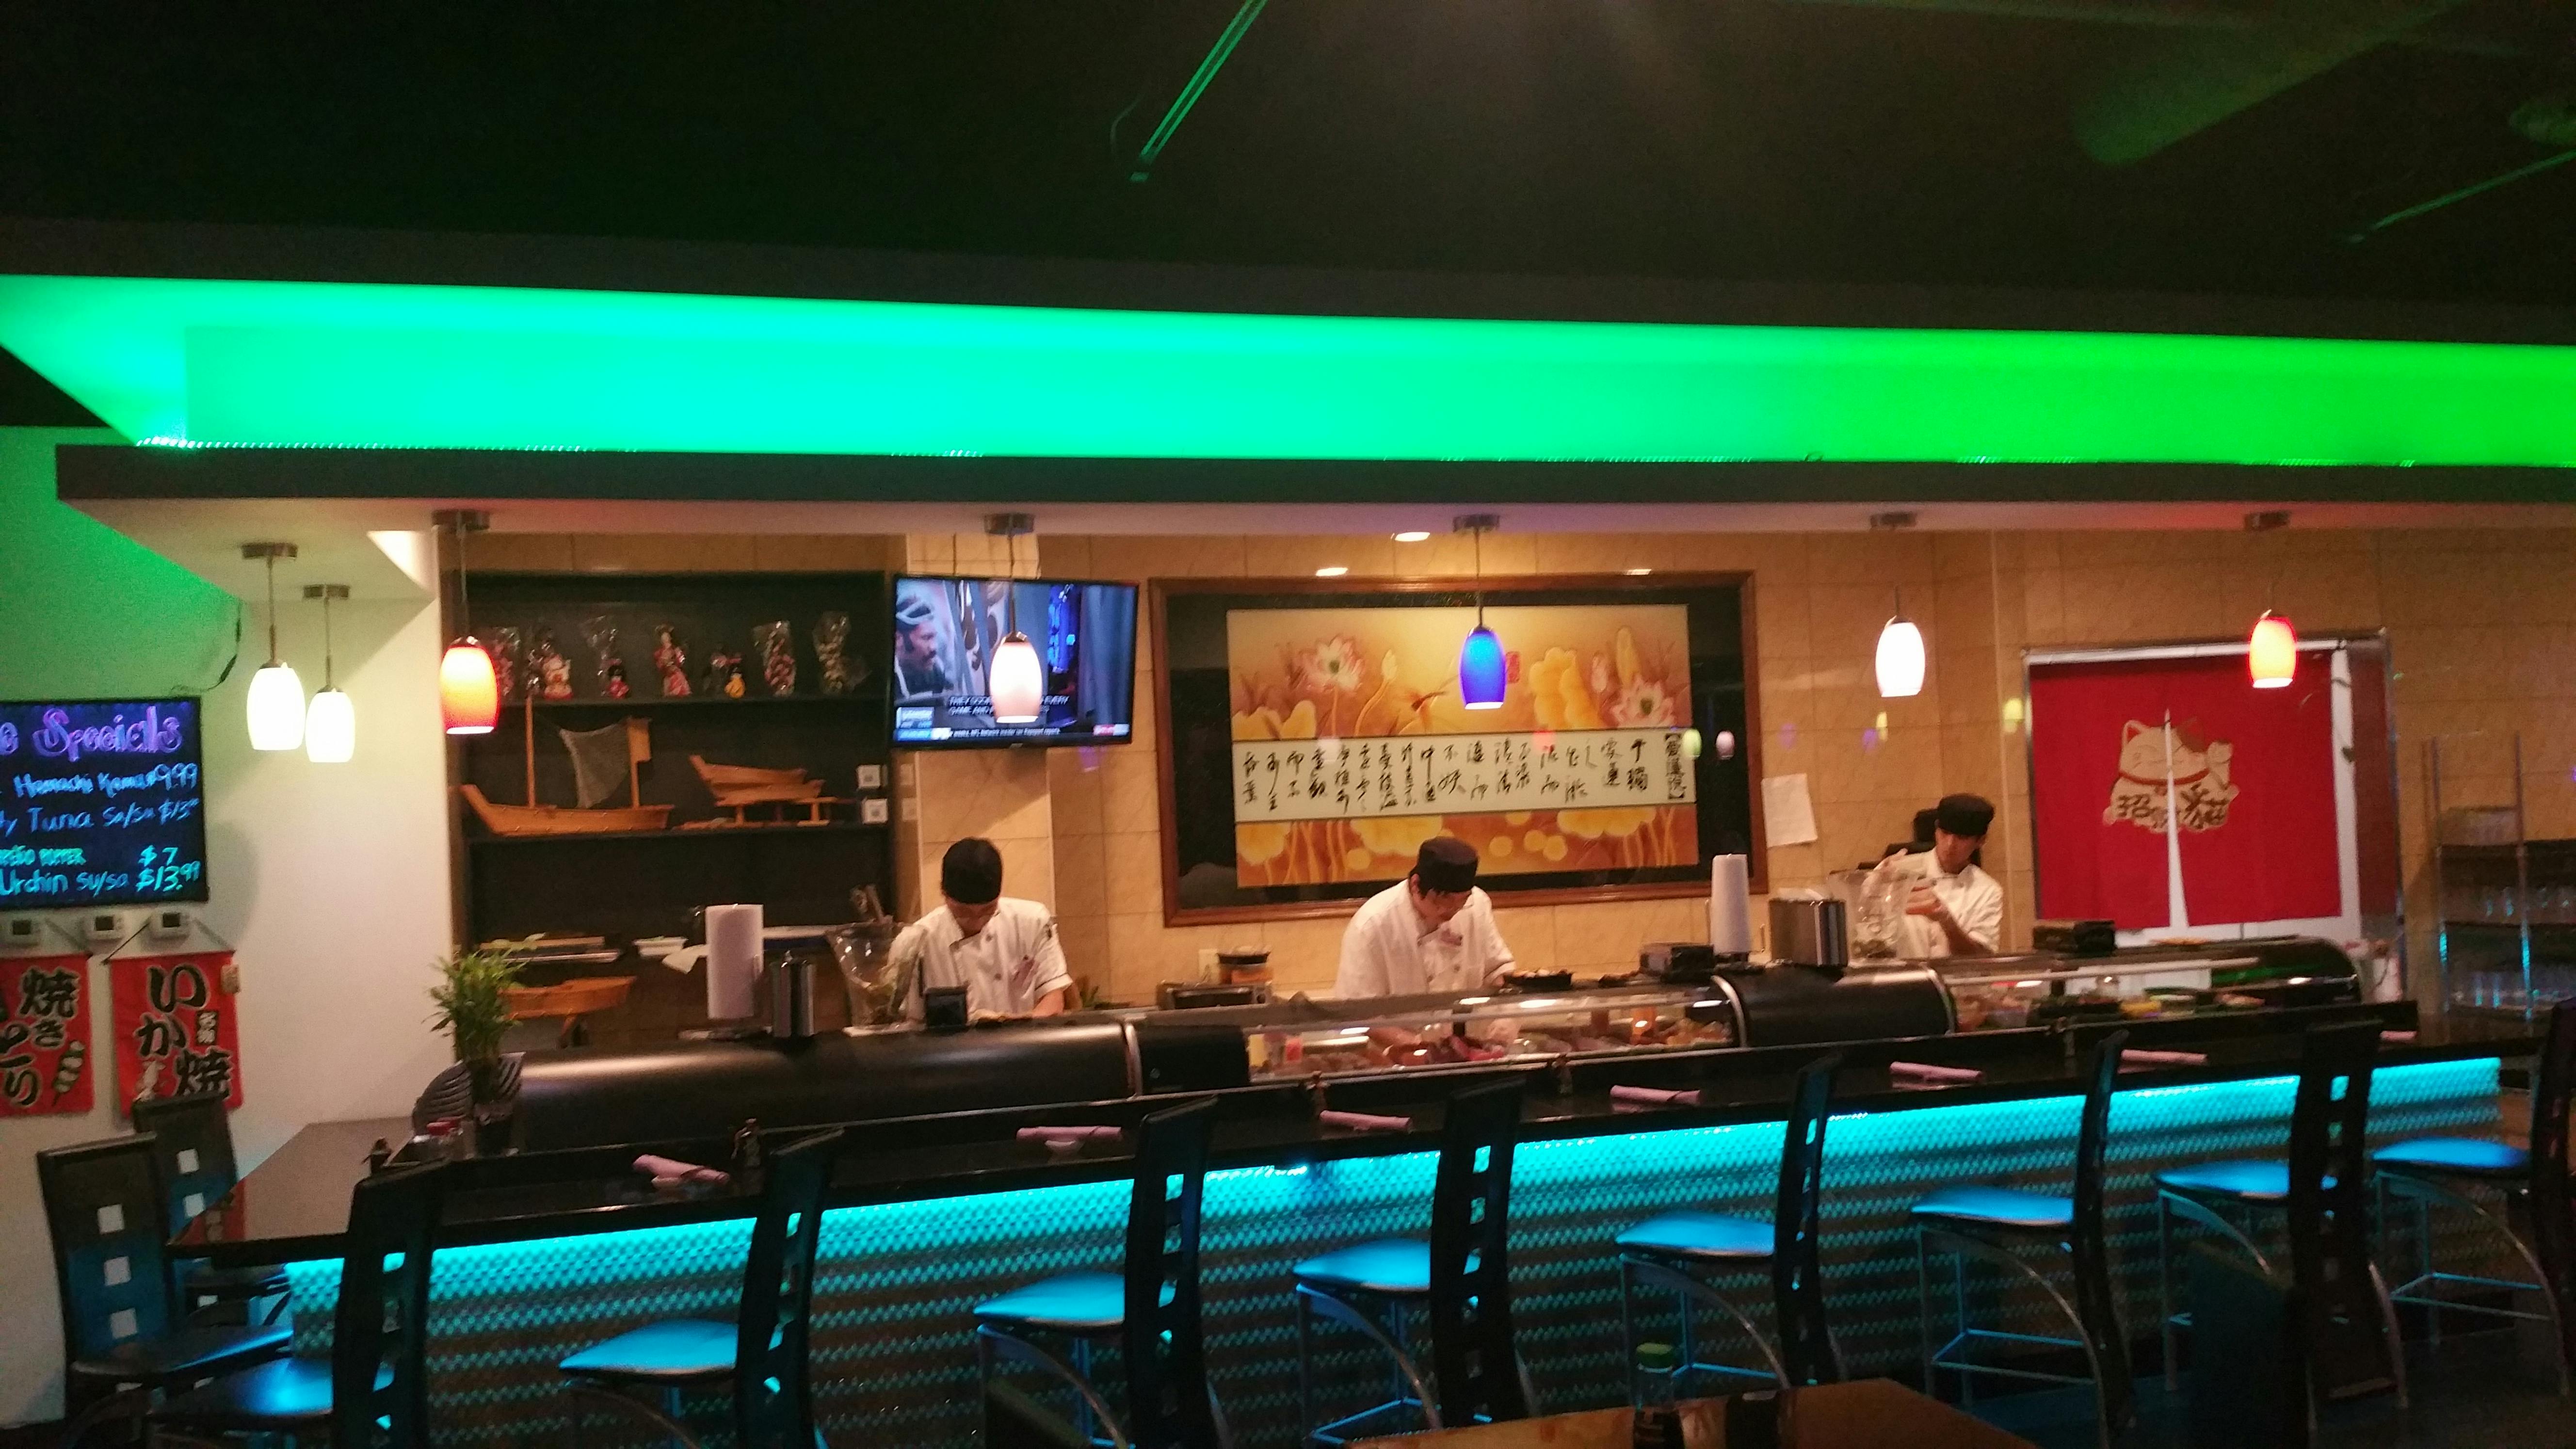 Free stock photo of sushi bar